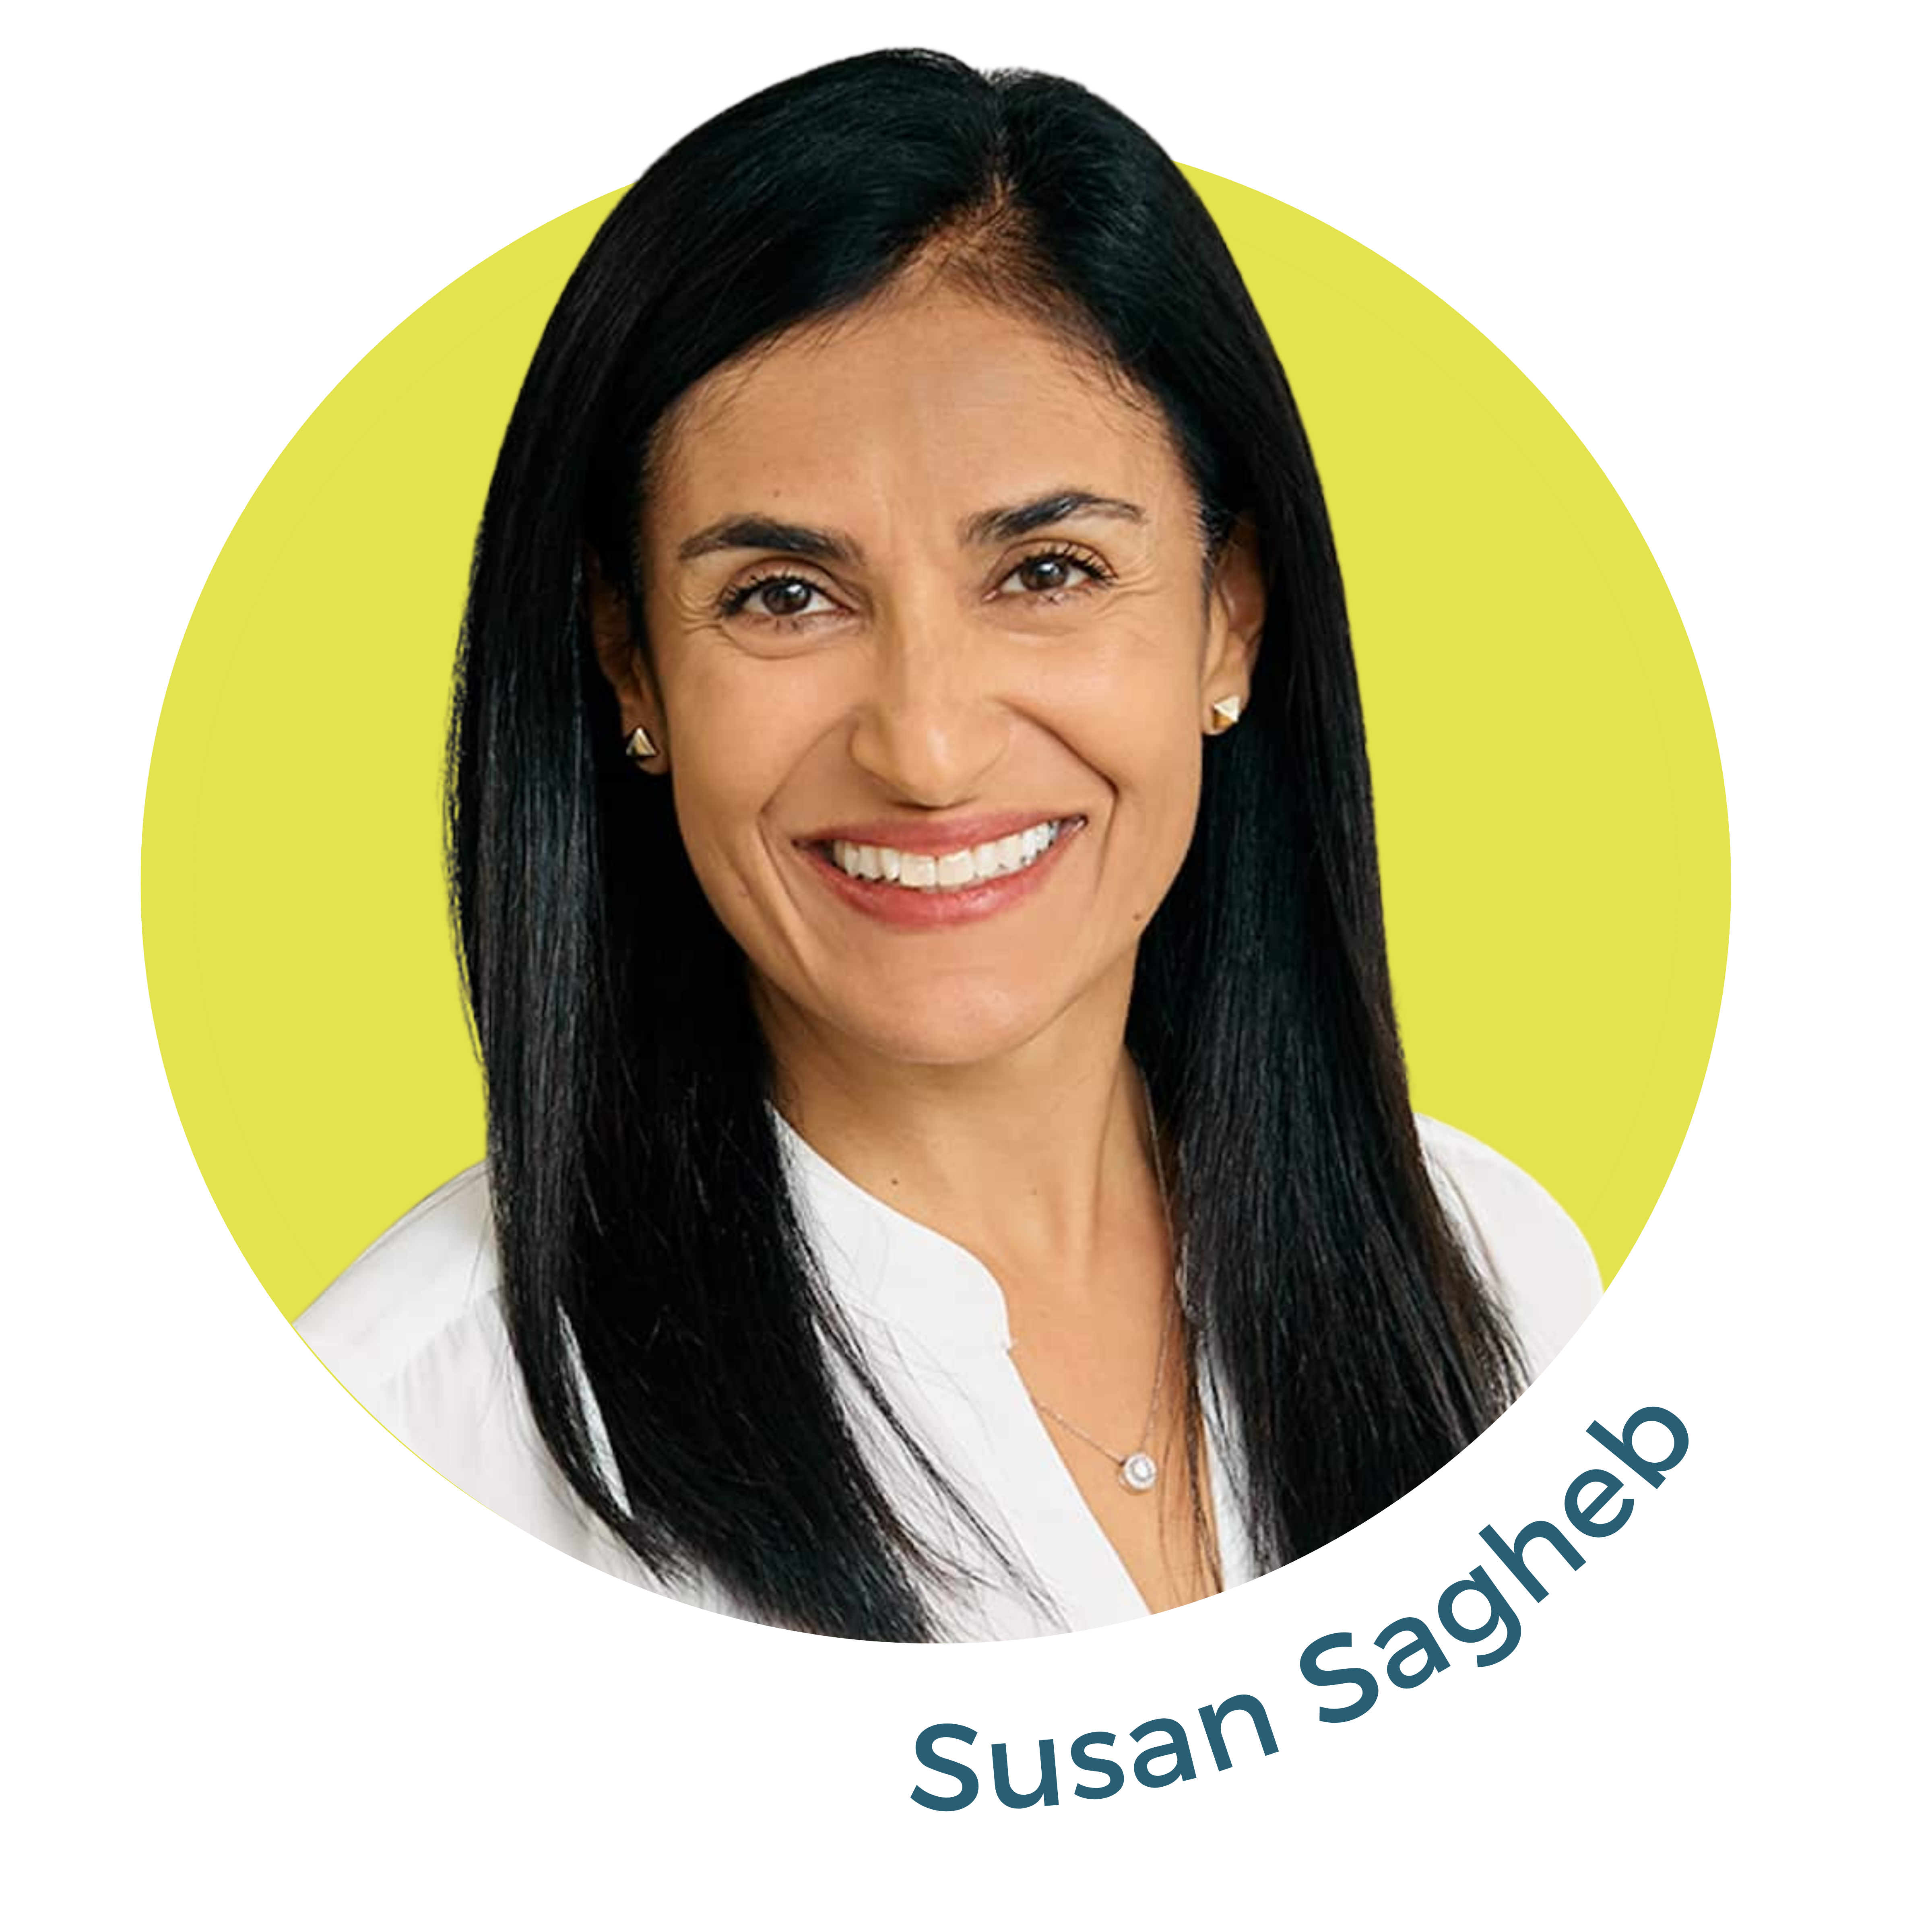 Susan Sagheb